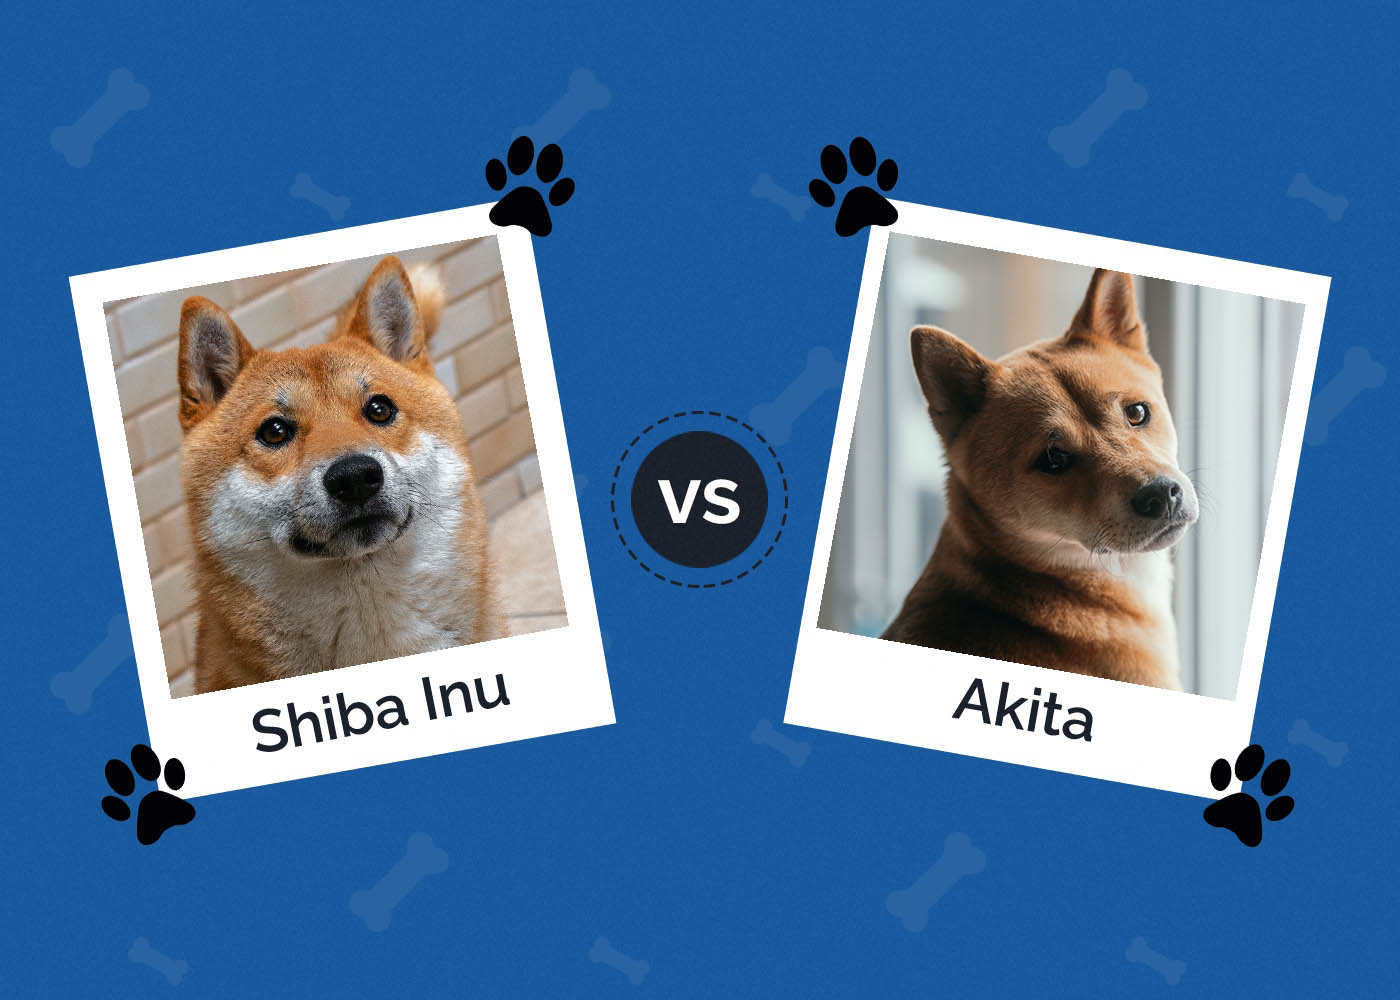 Shiba Inu vs Akita